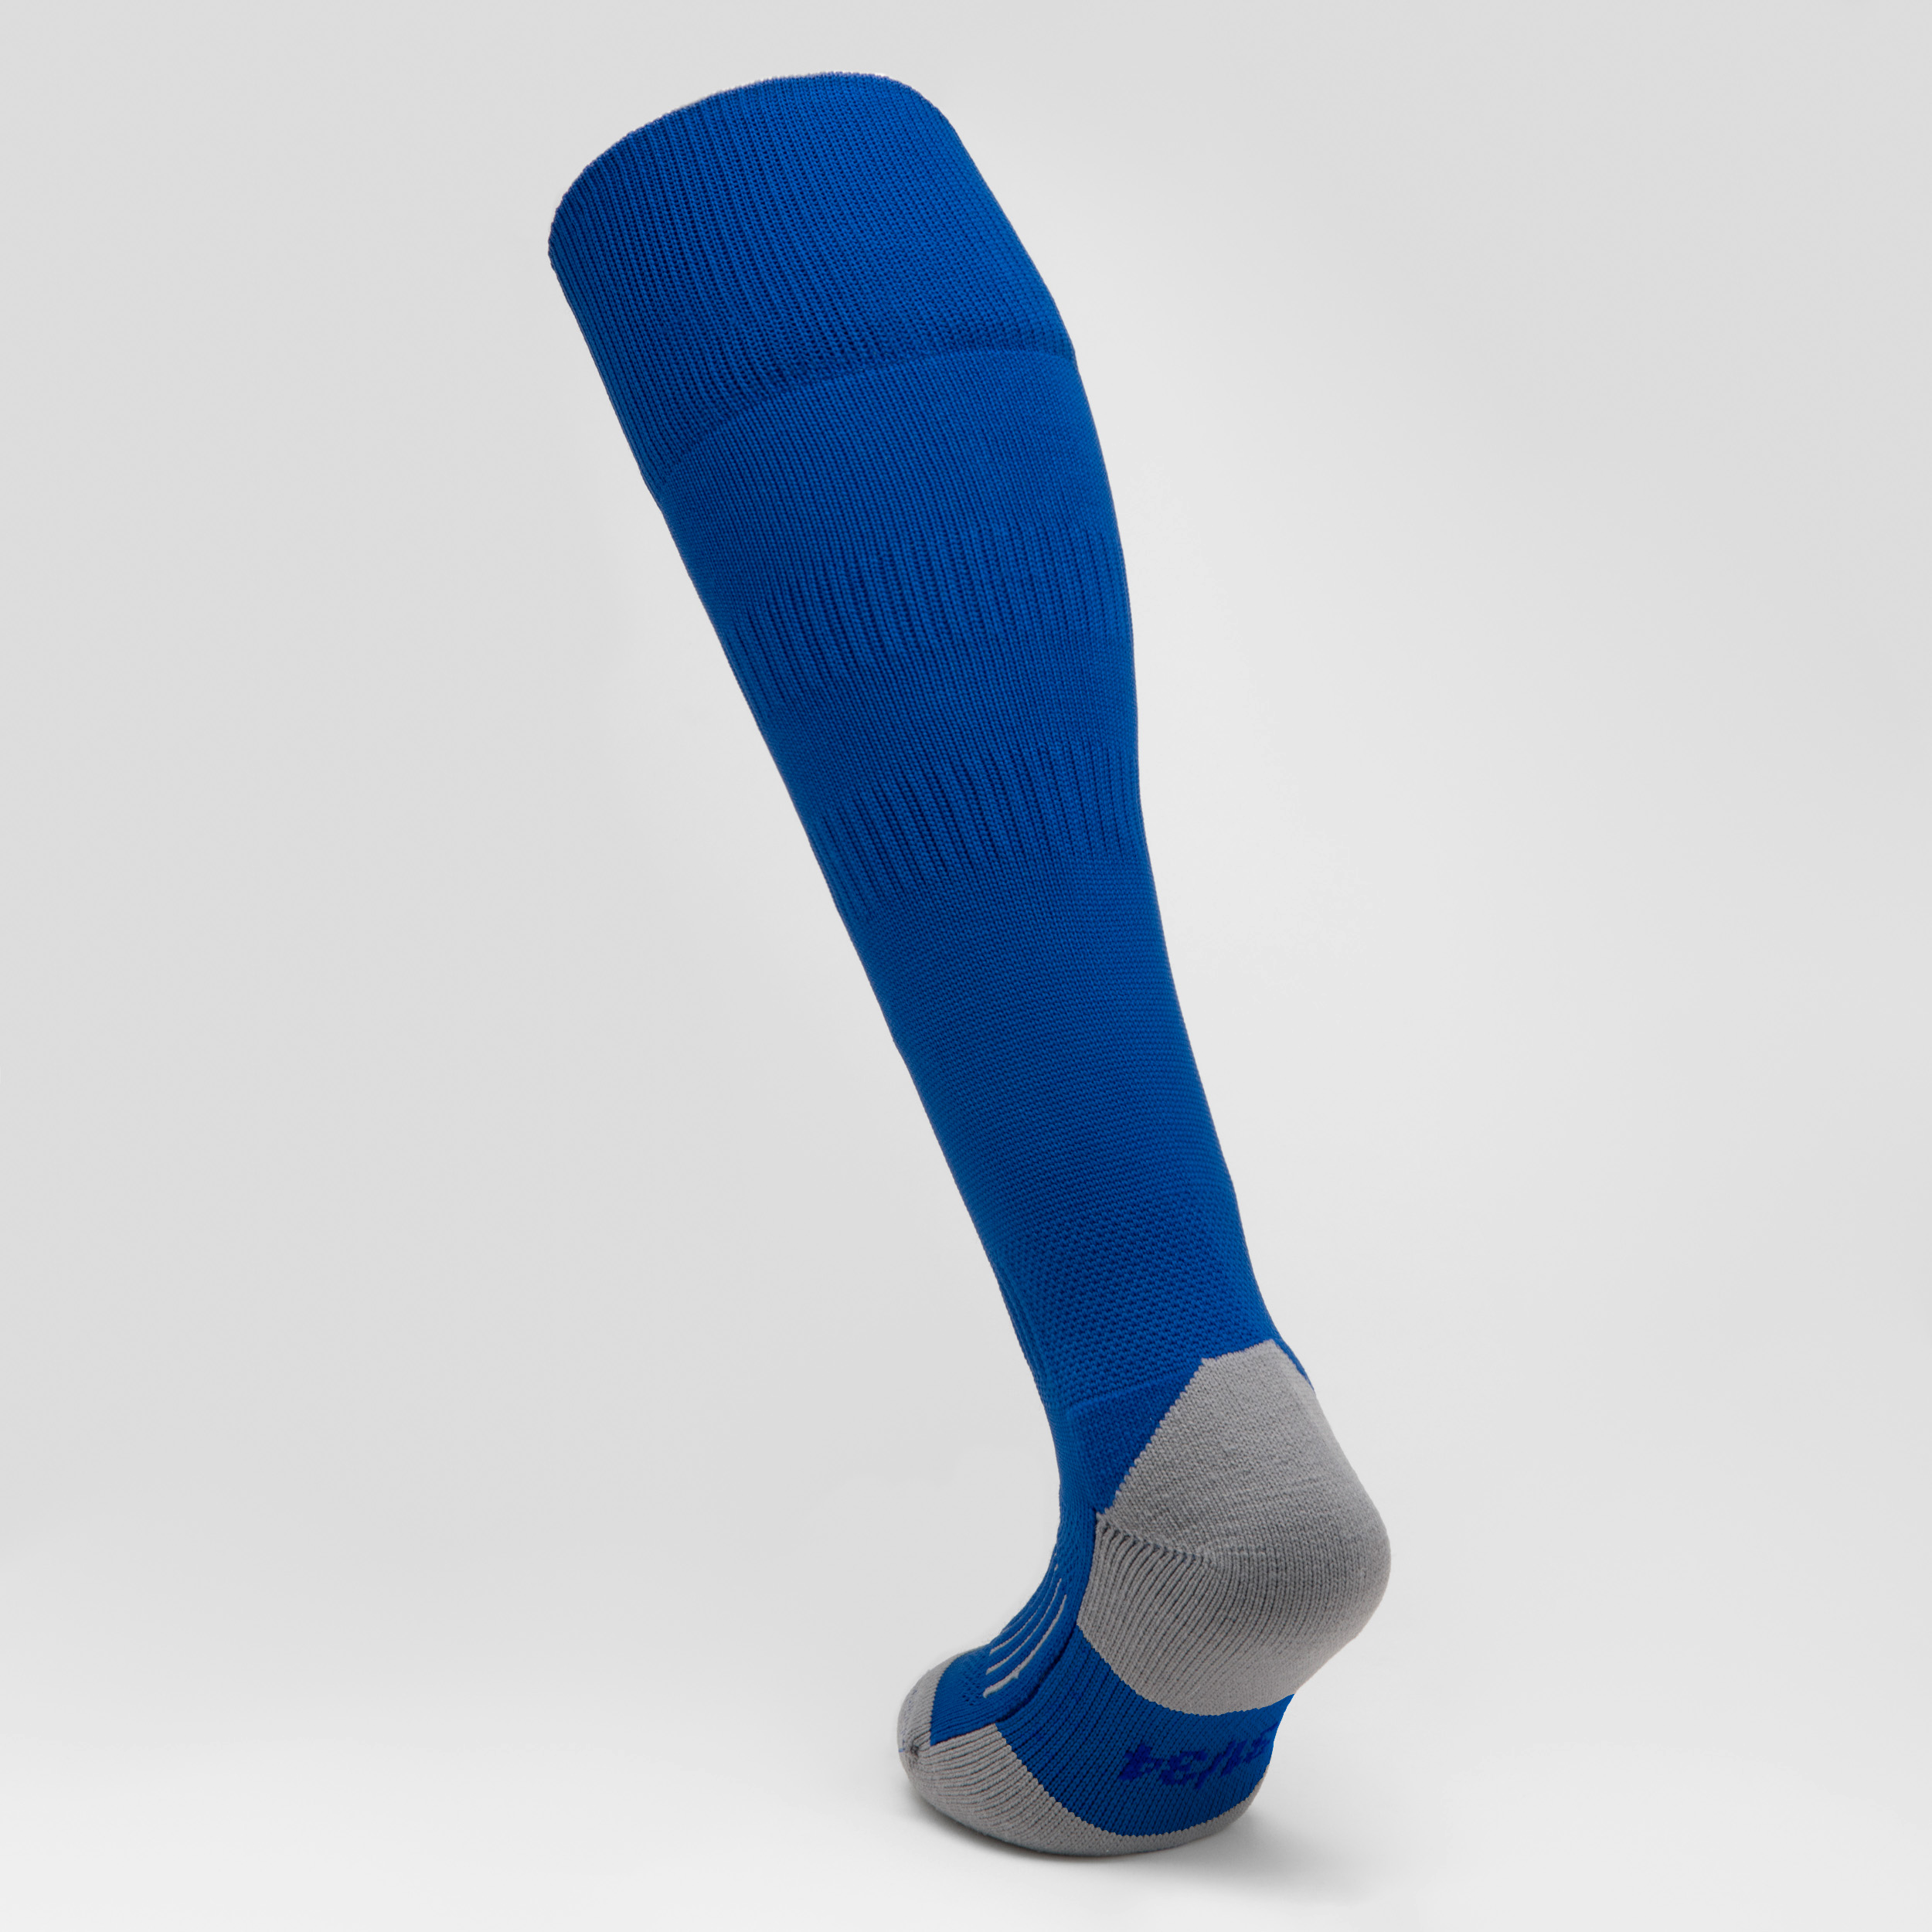 Chaussettes hautes de rugby enfant R500 bleu indigo pour les clubs et  collectivités